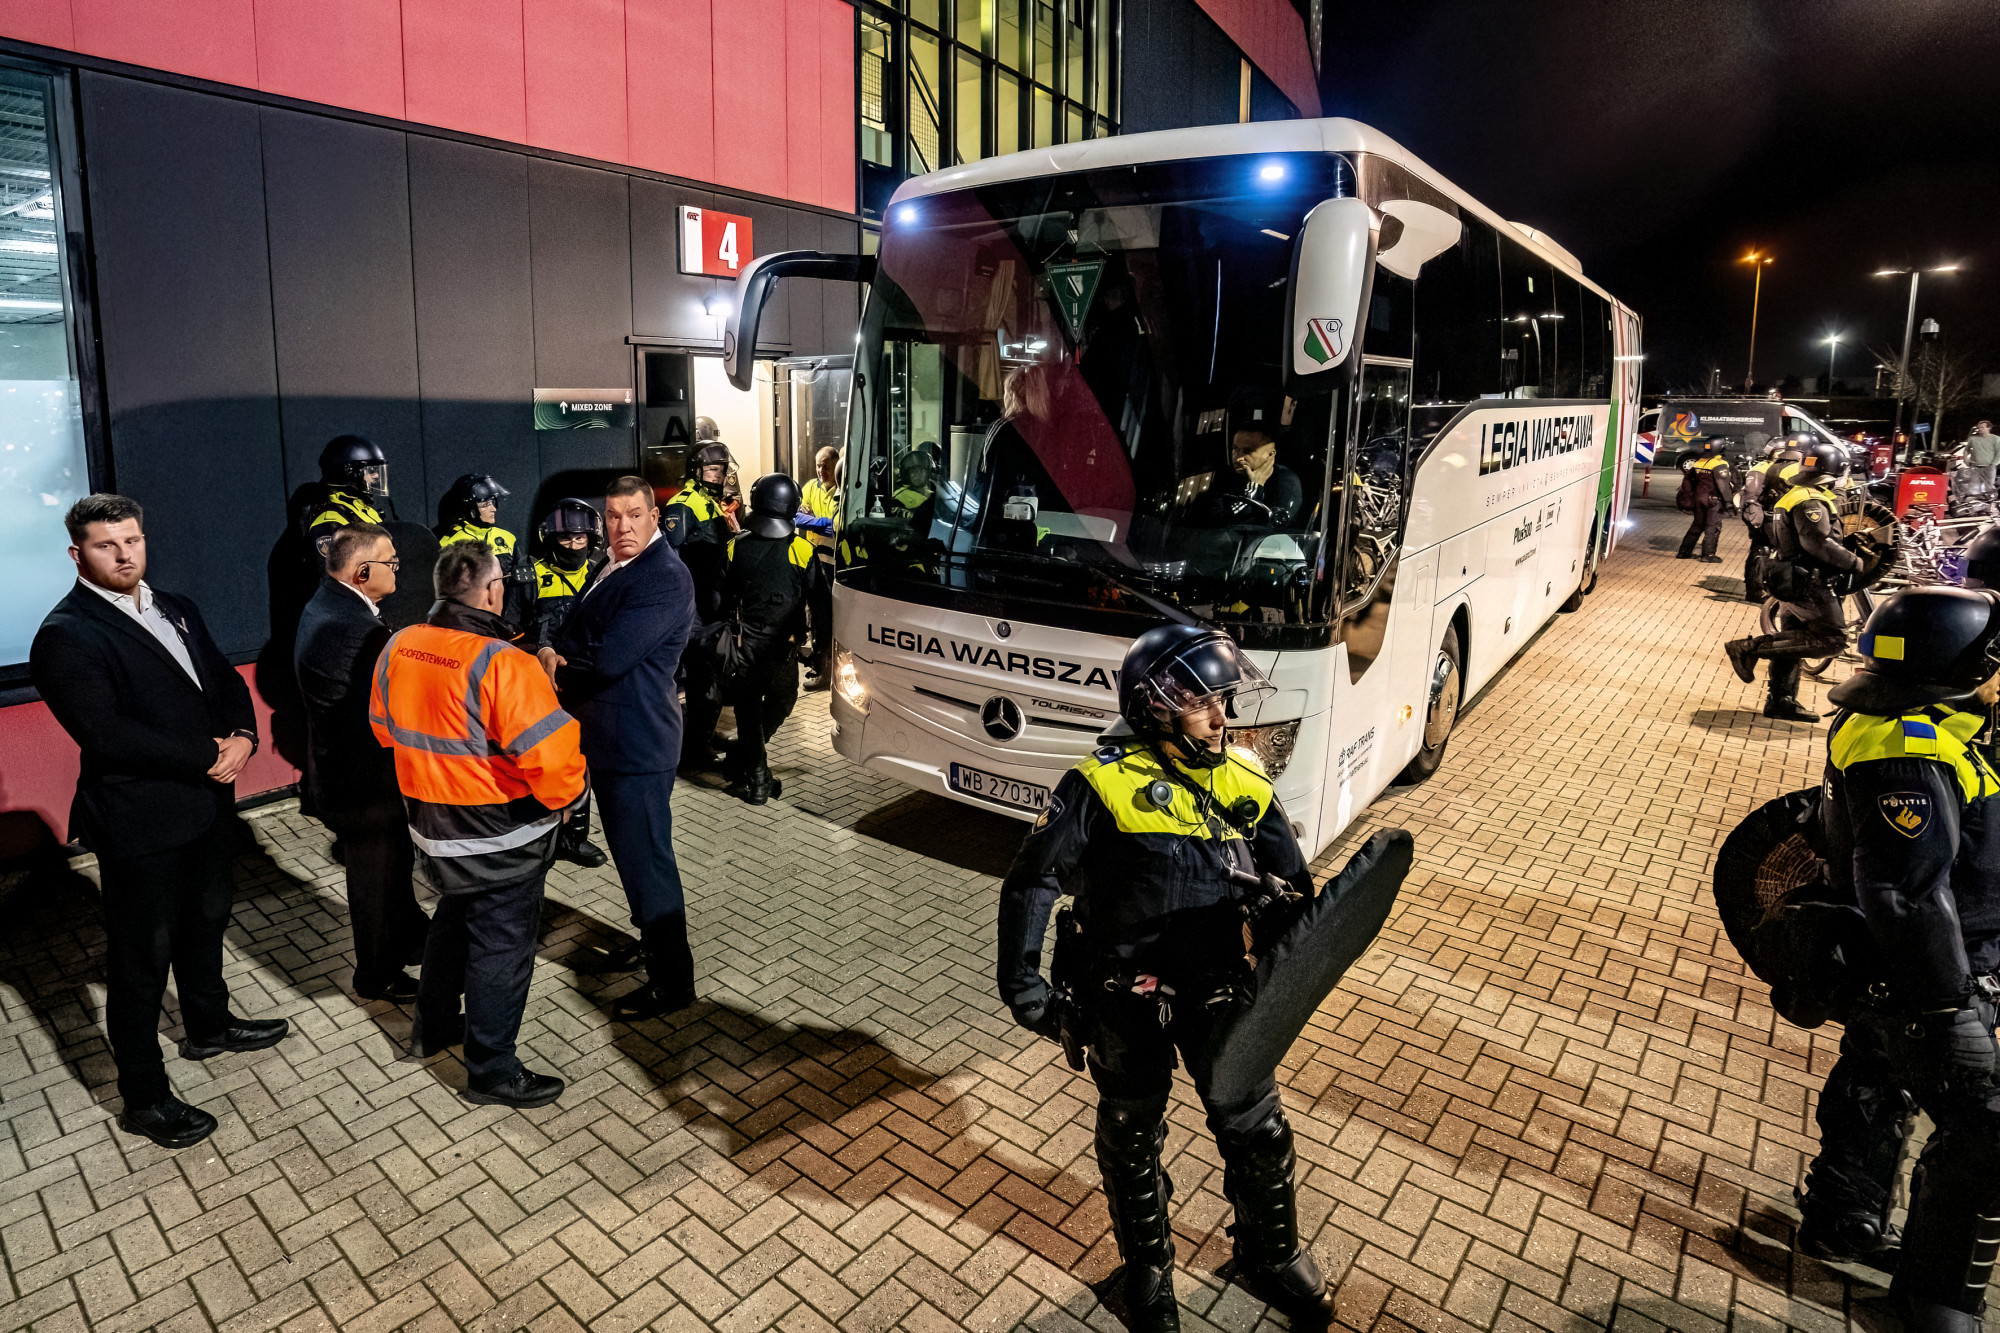 Hollandiai mérkőzésük után letartóztatták a Legia Varsó két játékosát